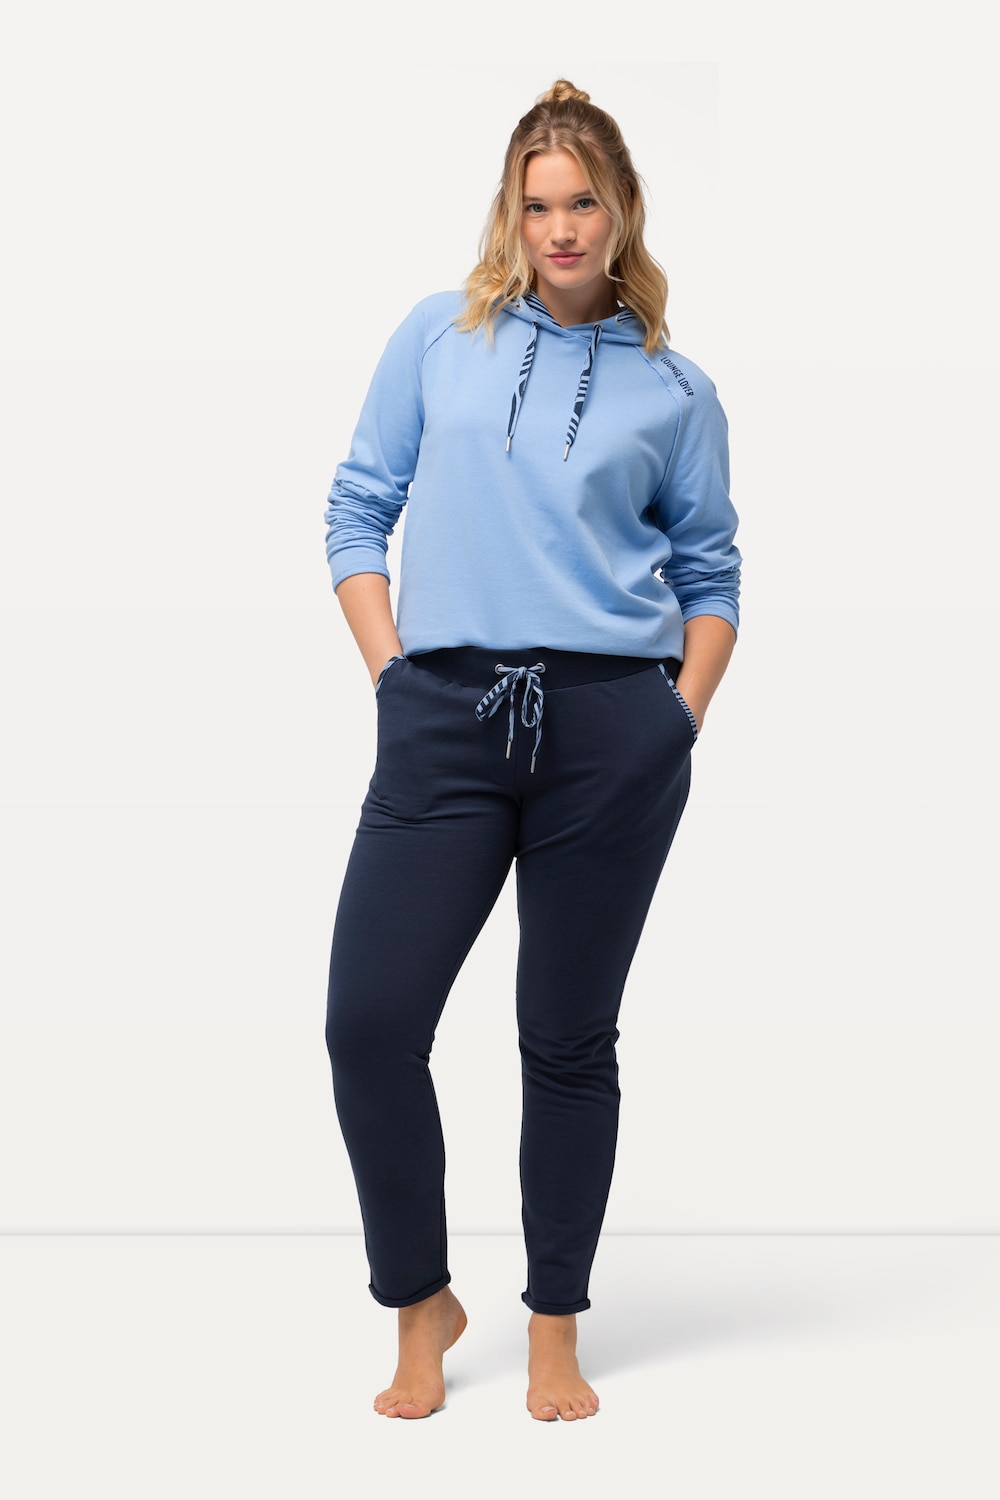 Grote Maten Loungewear broek, Dames, blauw, Maat: 50/52, Katoen/Polyester, Ulla Popken